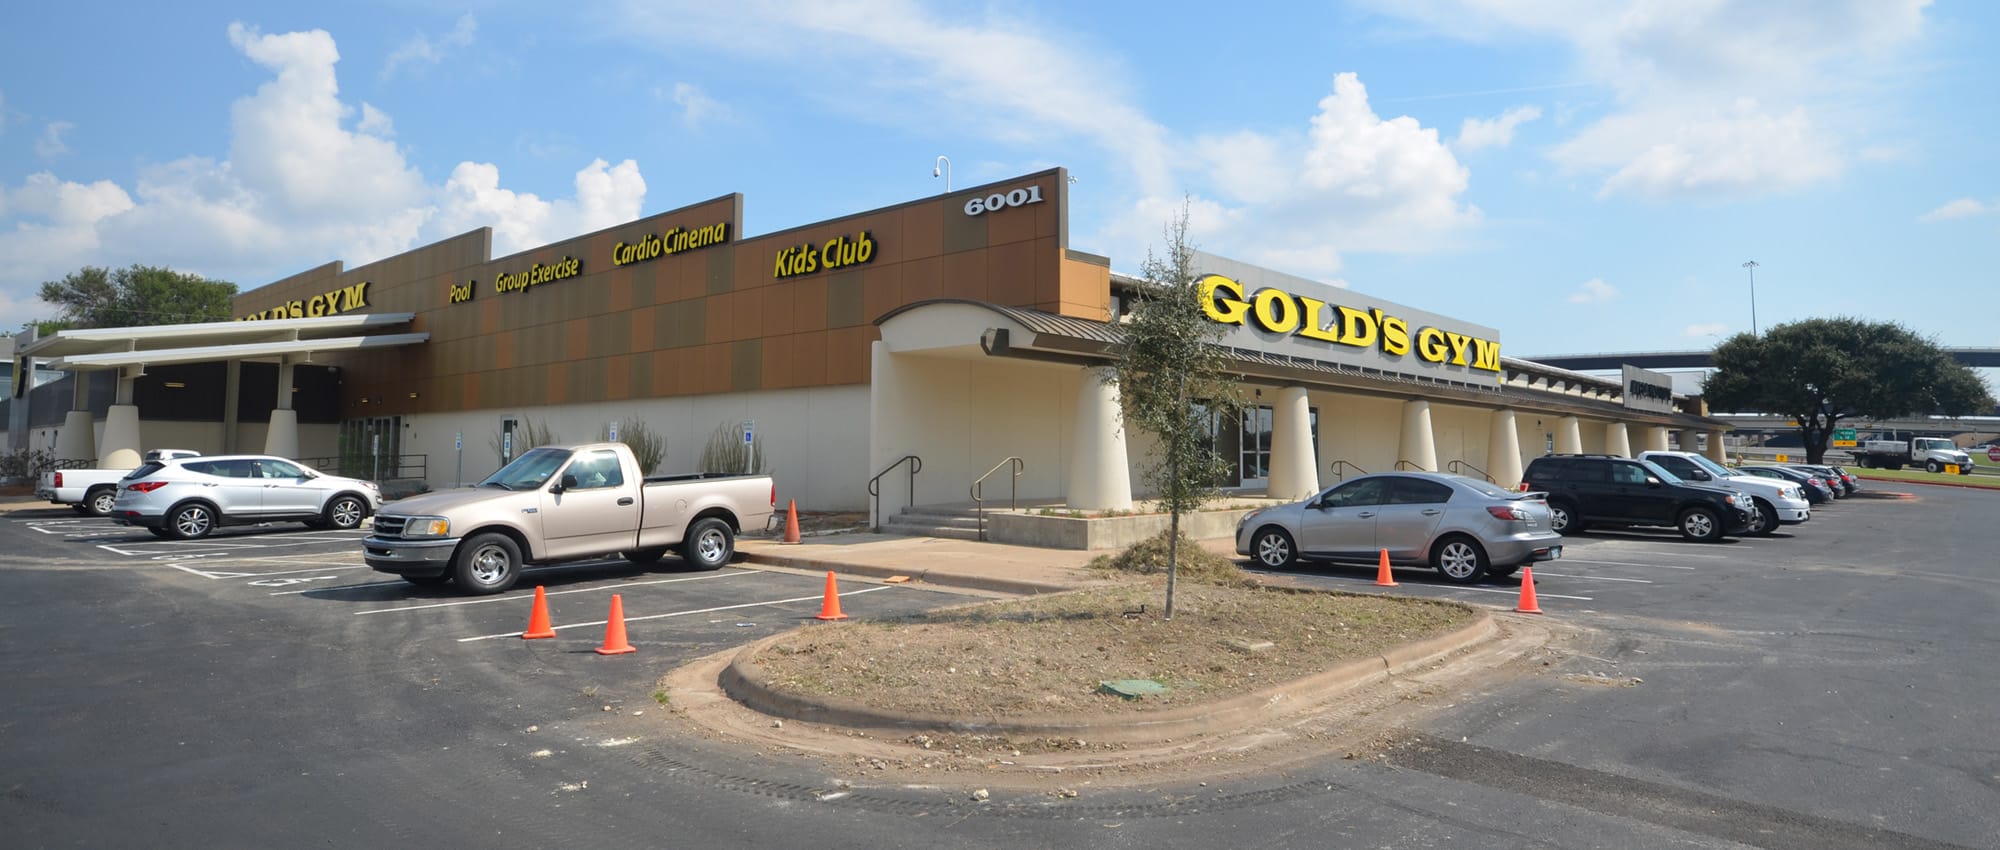 6001 Middlefiskville | Retail Redevelopment in Austin, Texas